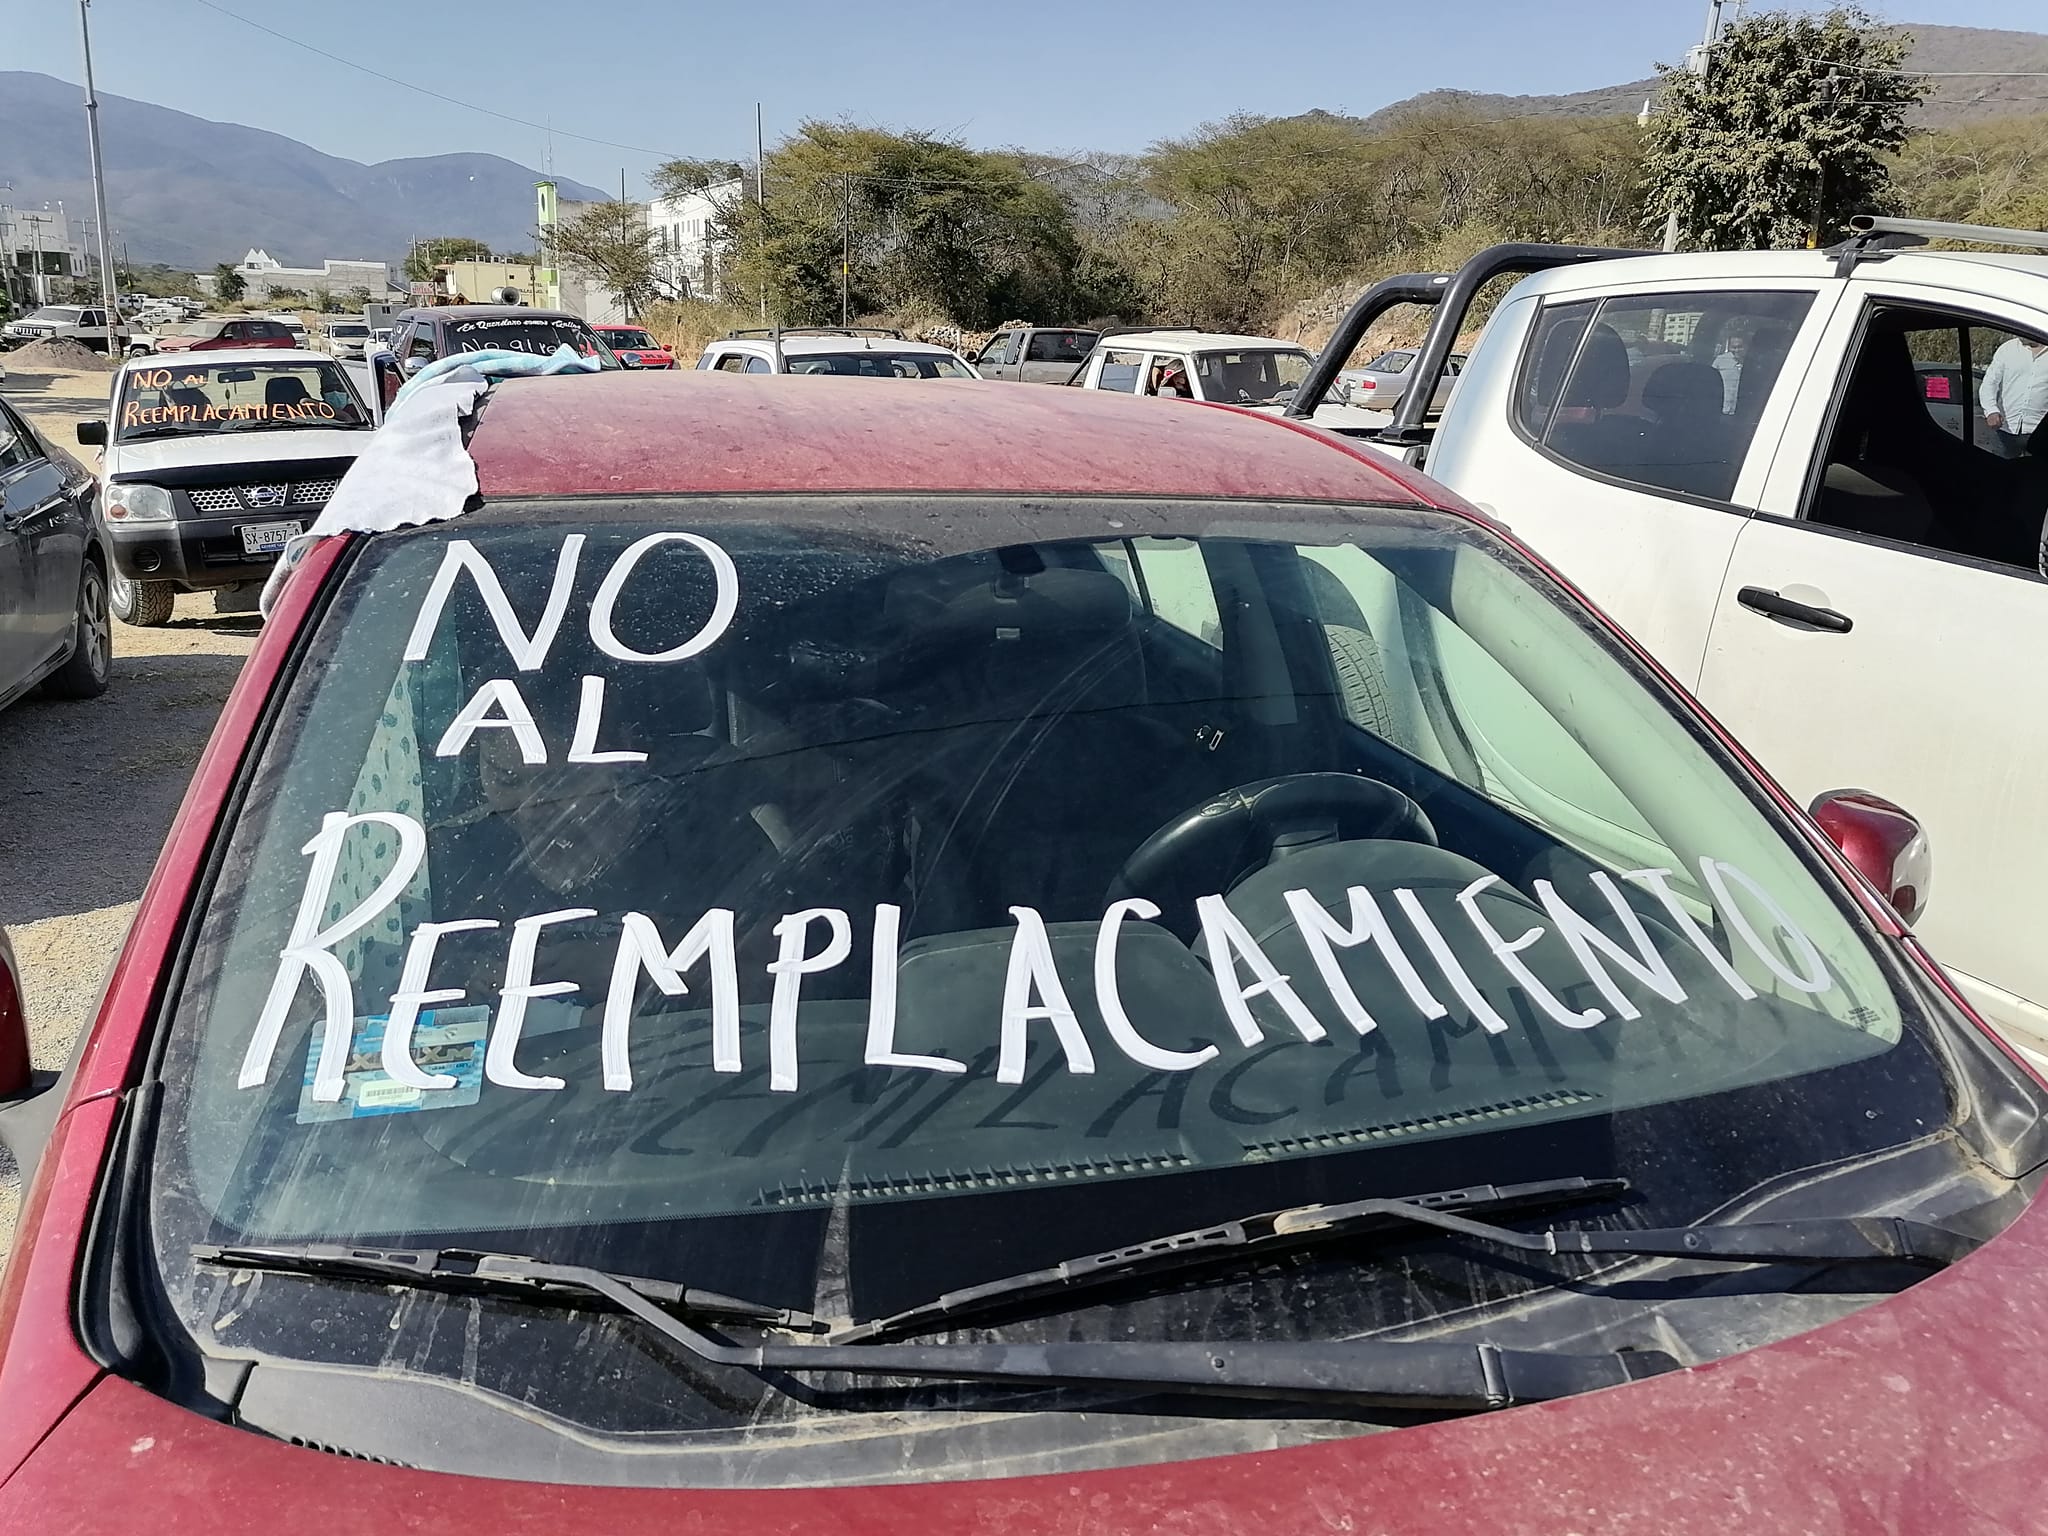 Protestan en la Sierra Gorda contra el reemplacamiento en Quer&eacute;taro